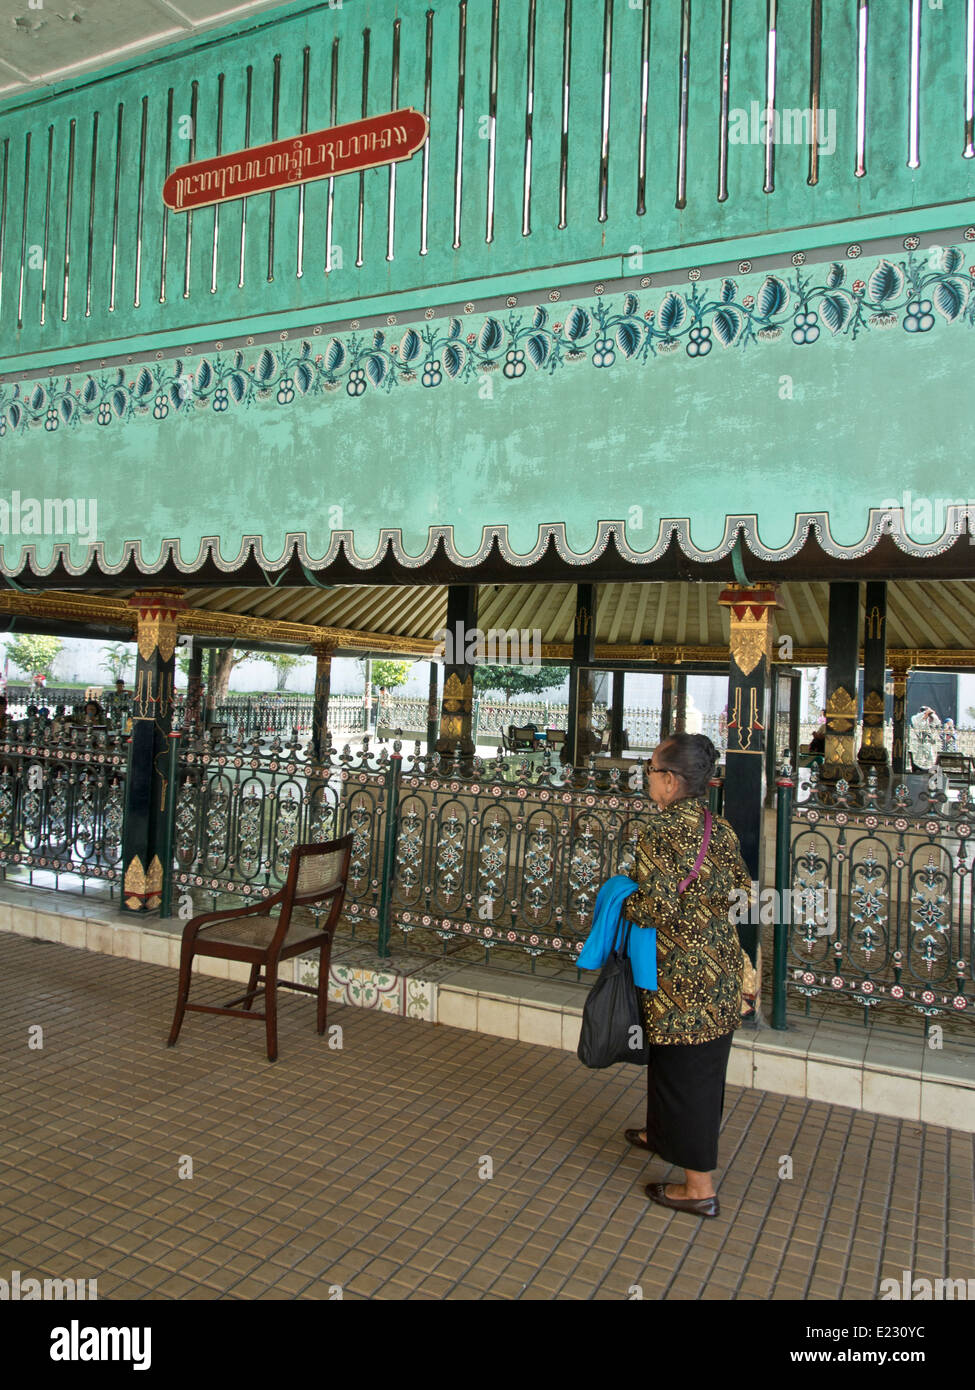 Aspect du Kraton palace, où le sultan et la cour royale a son siège traditionnel. Yogyakarta, Indonésie Banque D'Images